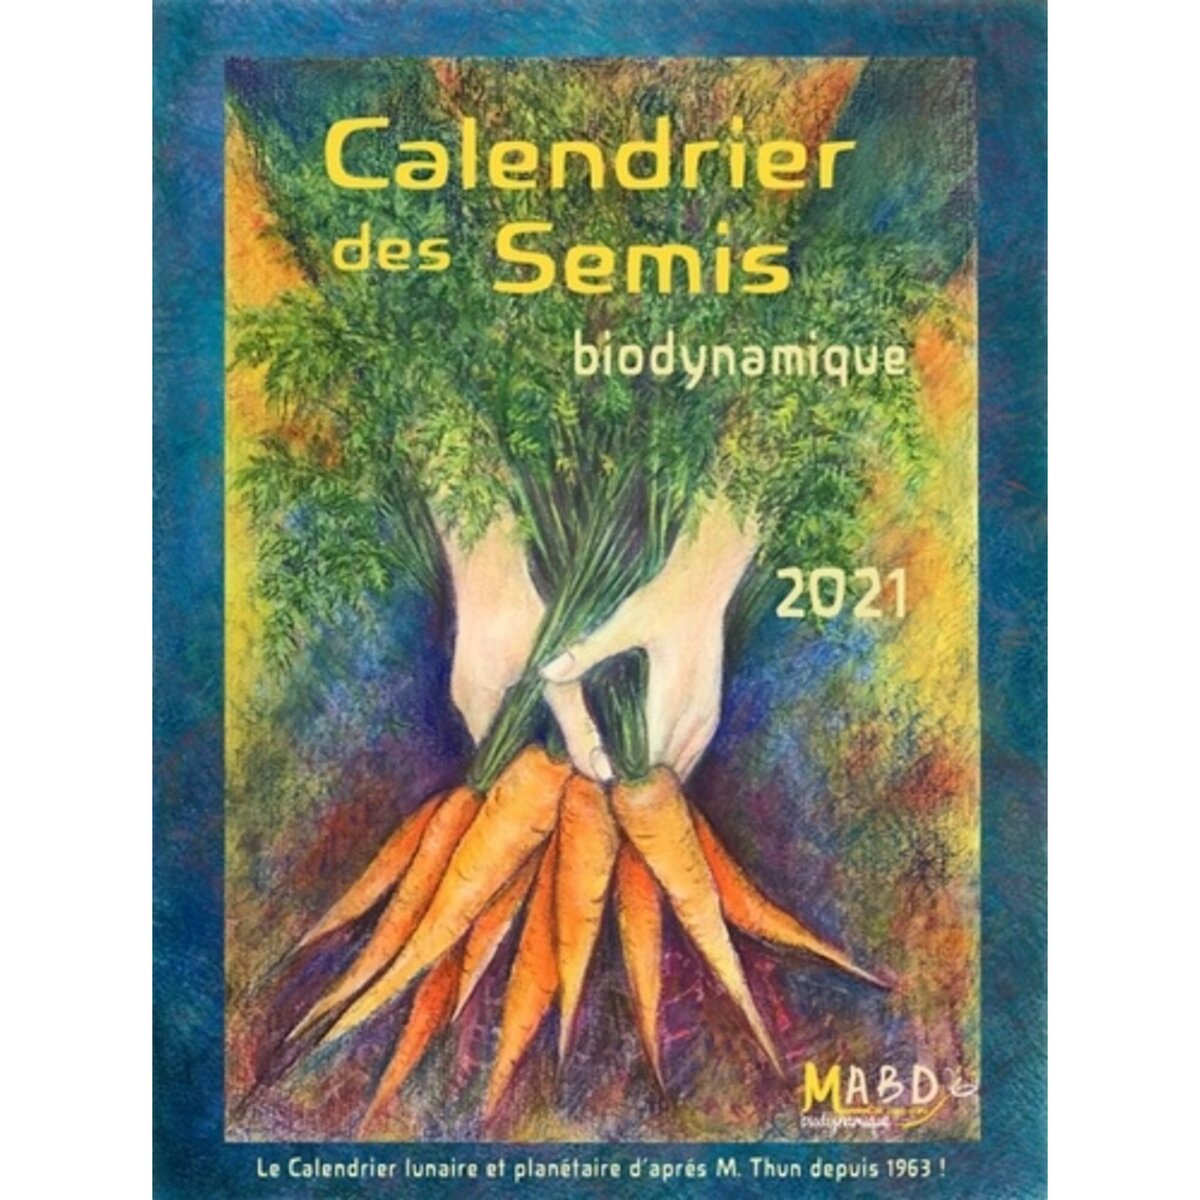  CALENDRIER DES SEMIS. BIODYNAMIQUE. JARDINAGE, AGRICULTURE. TENDANCES METEOROLOGIQUES, EDITION 2021, Thun Matthias